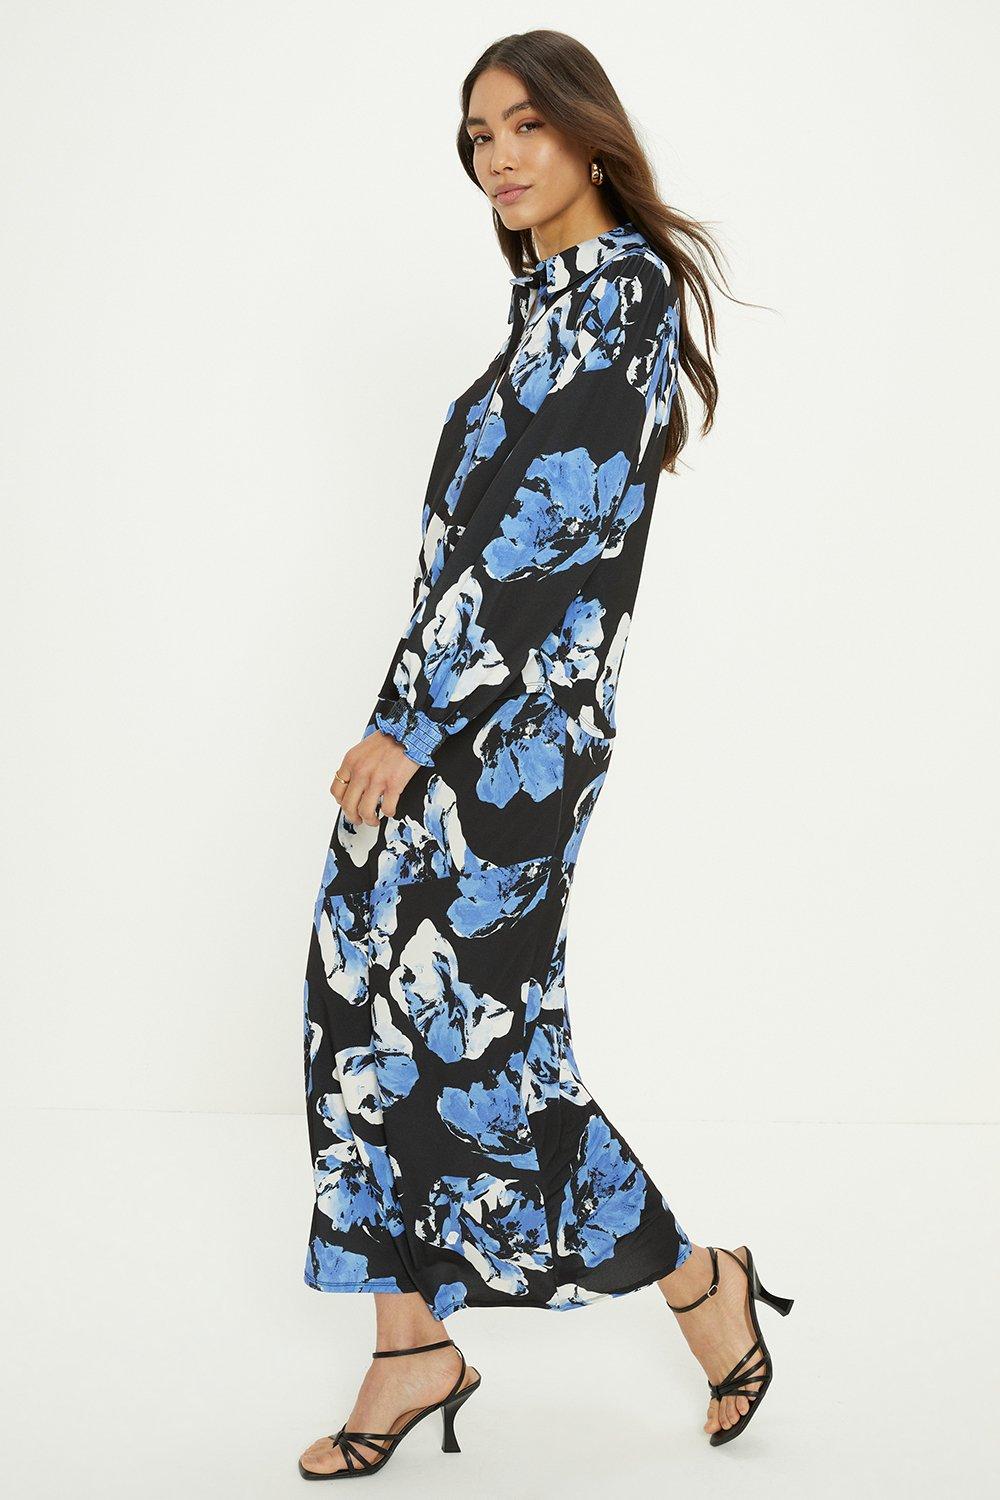 Юбка миди со швами с цветочным принтом Oasis, синий юбка mango с цветочным принтом 42 размер